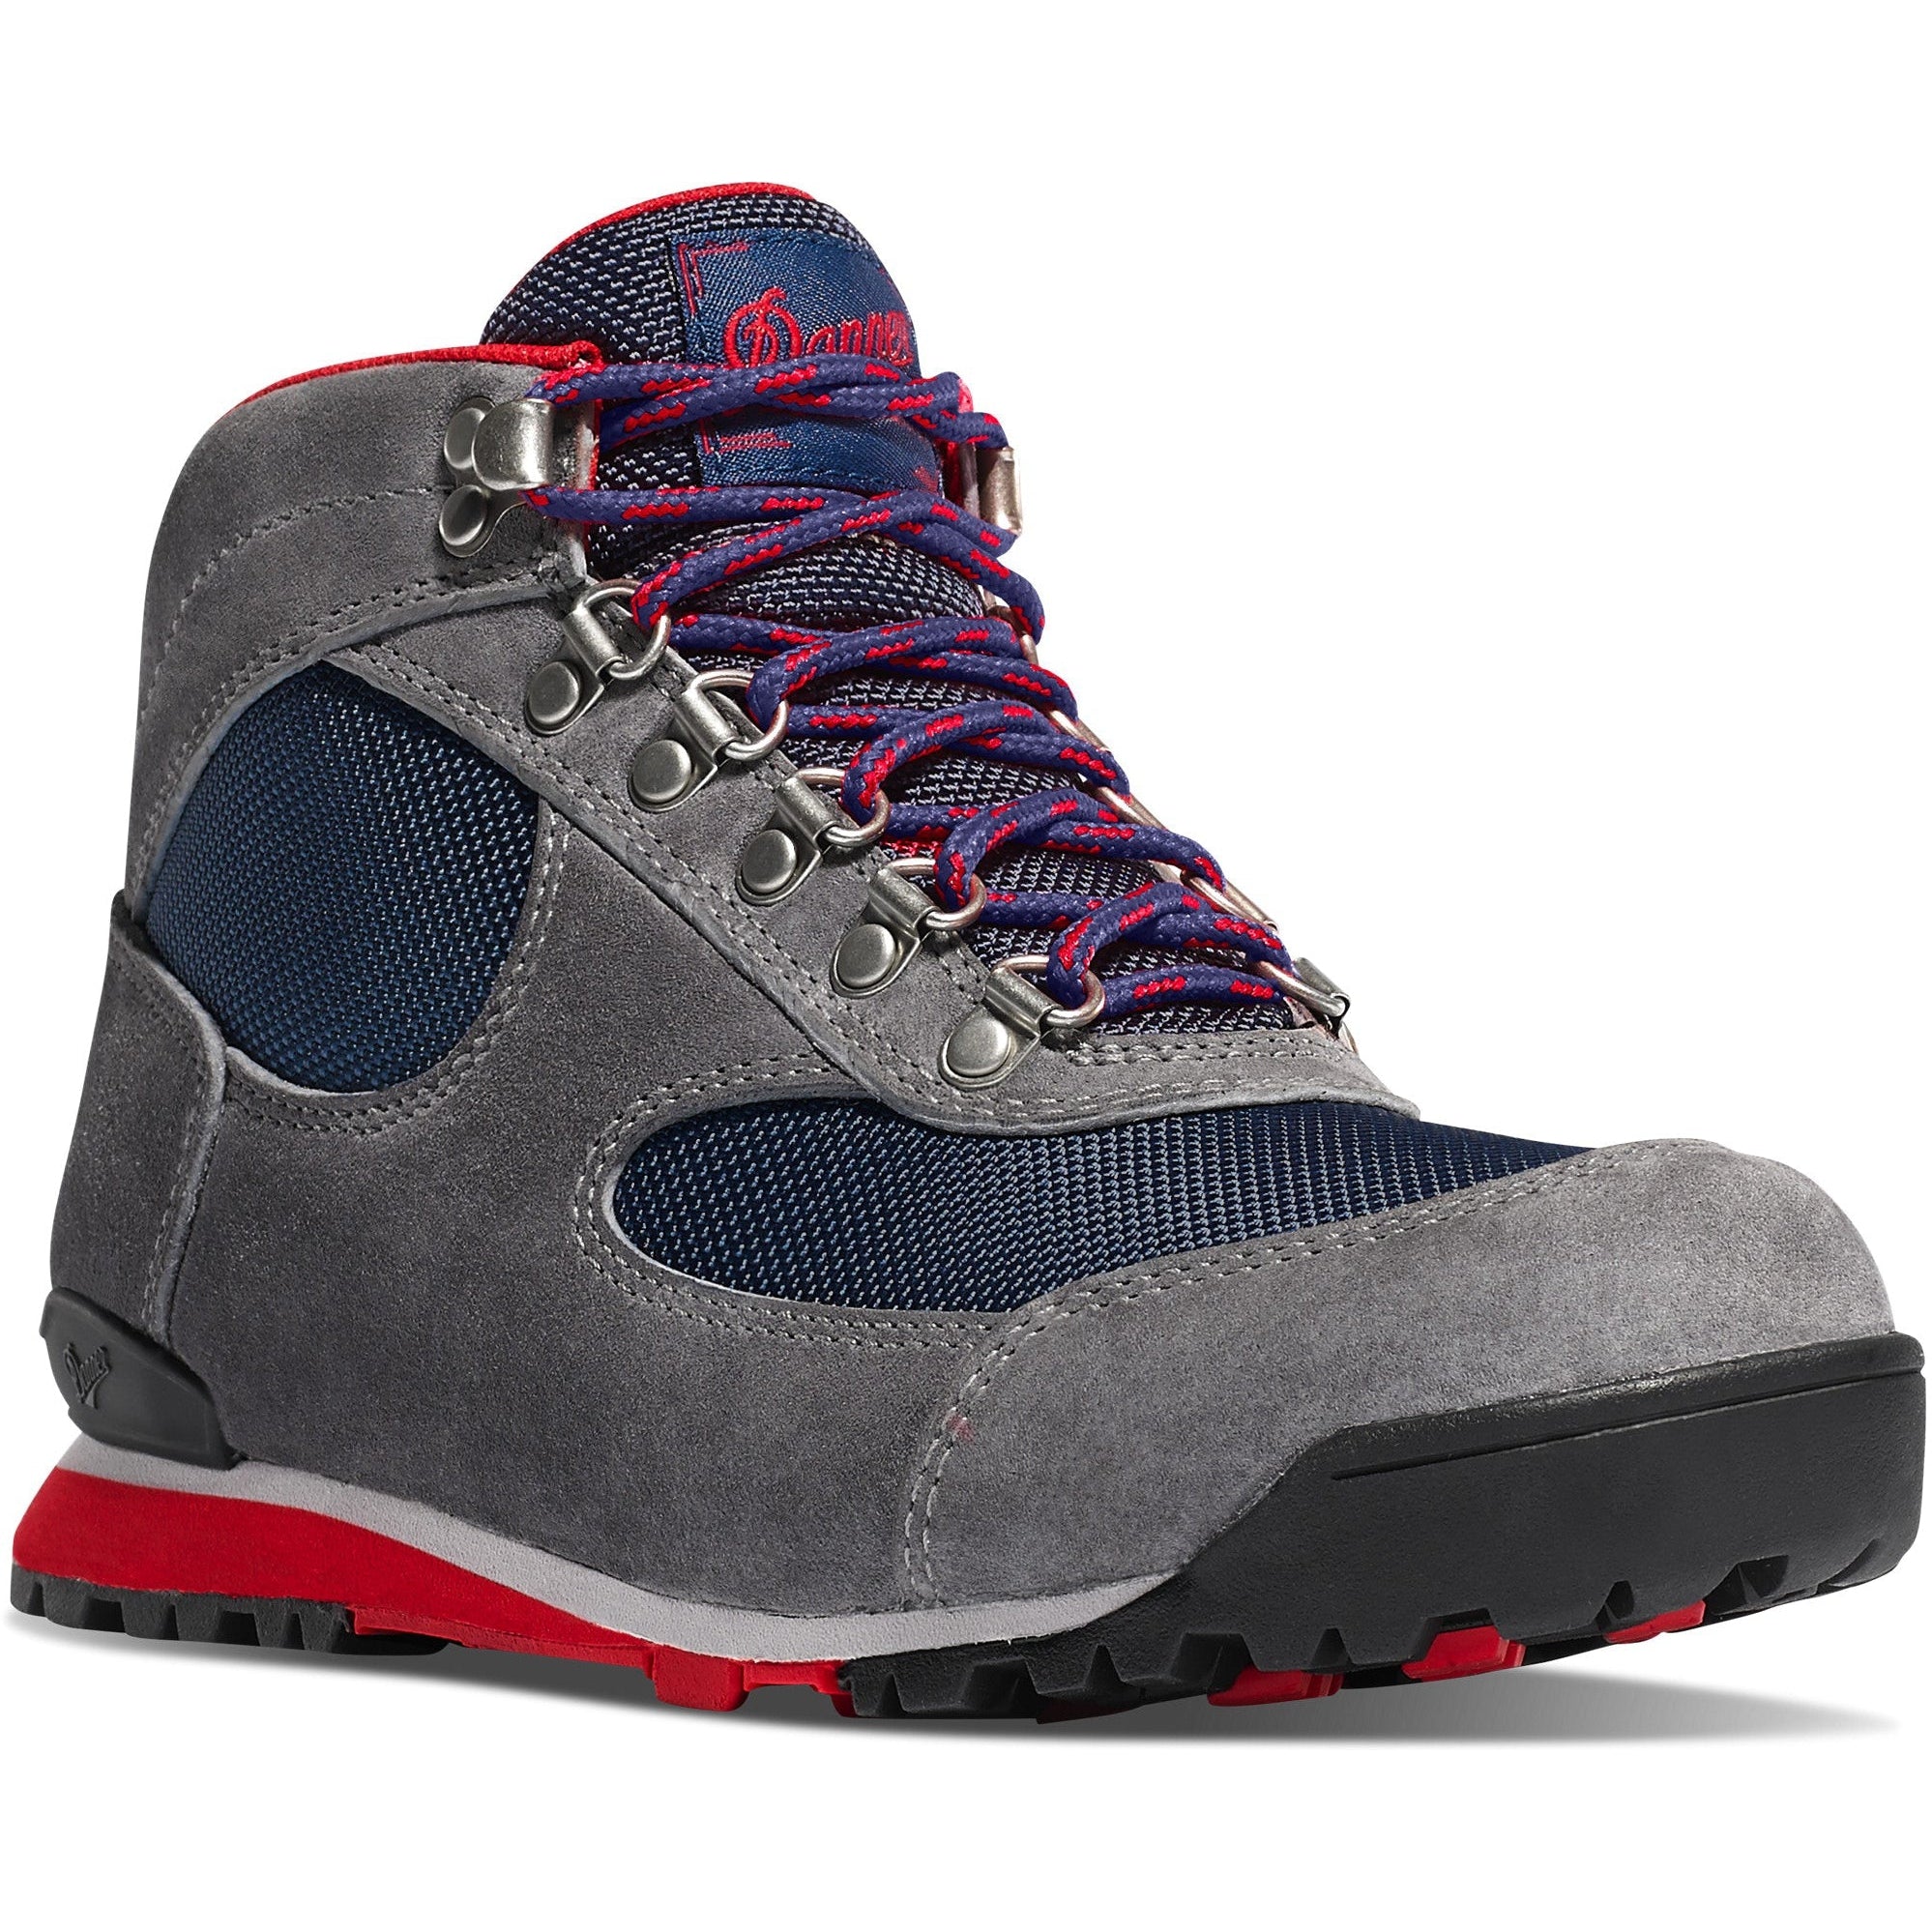 Danner Women's Jag 4.5" WP Hiking Boot - Steel Gray - 37356 5 / Medium / Grey - Overlook Boots